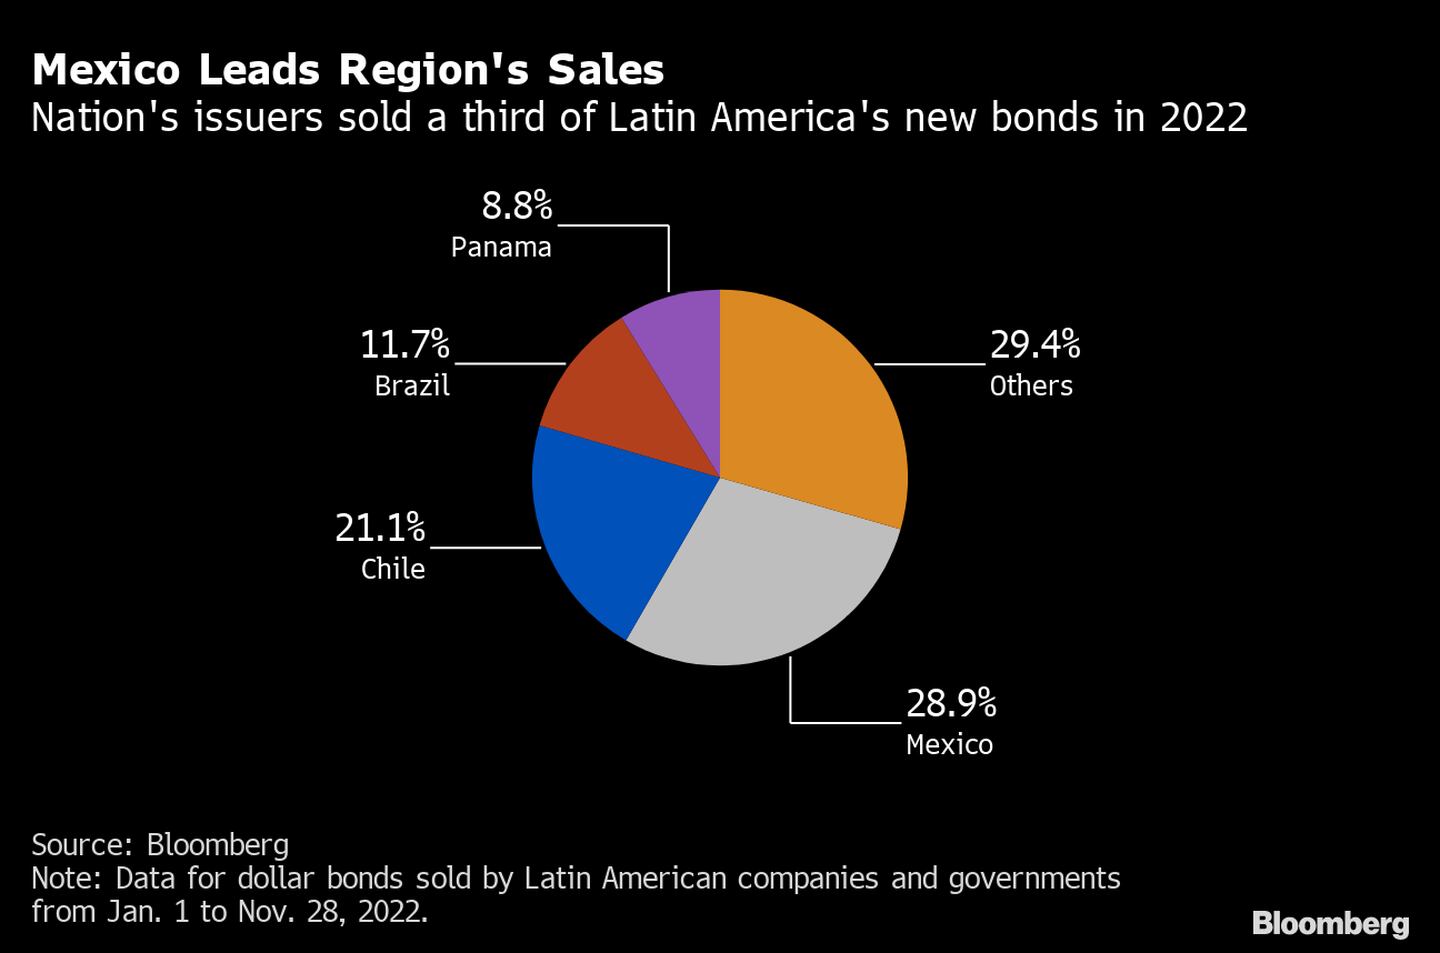 Los emisores soberanos han vendido un tercio de los nuevos bonos latinoamericanos en 2022. dfd